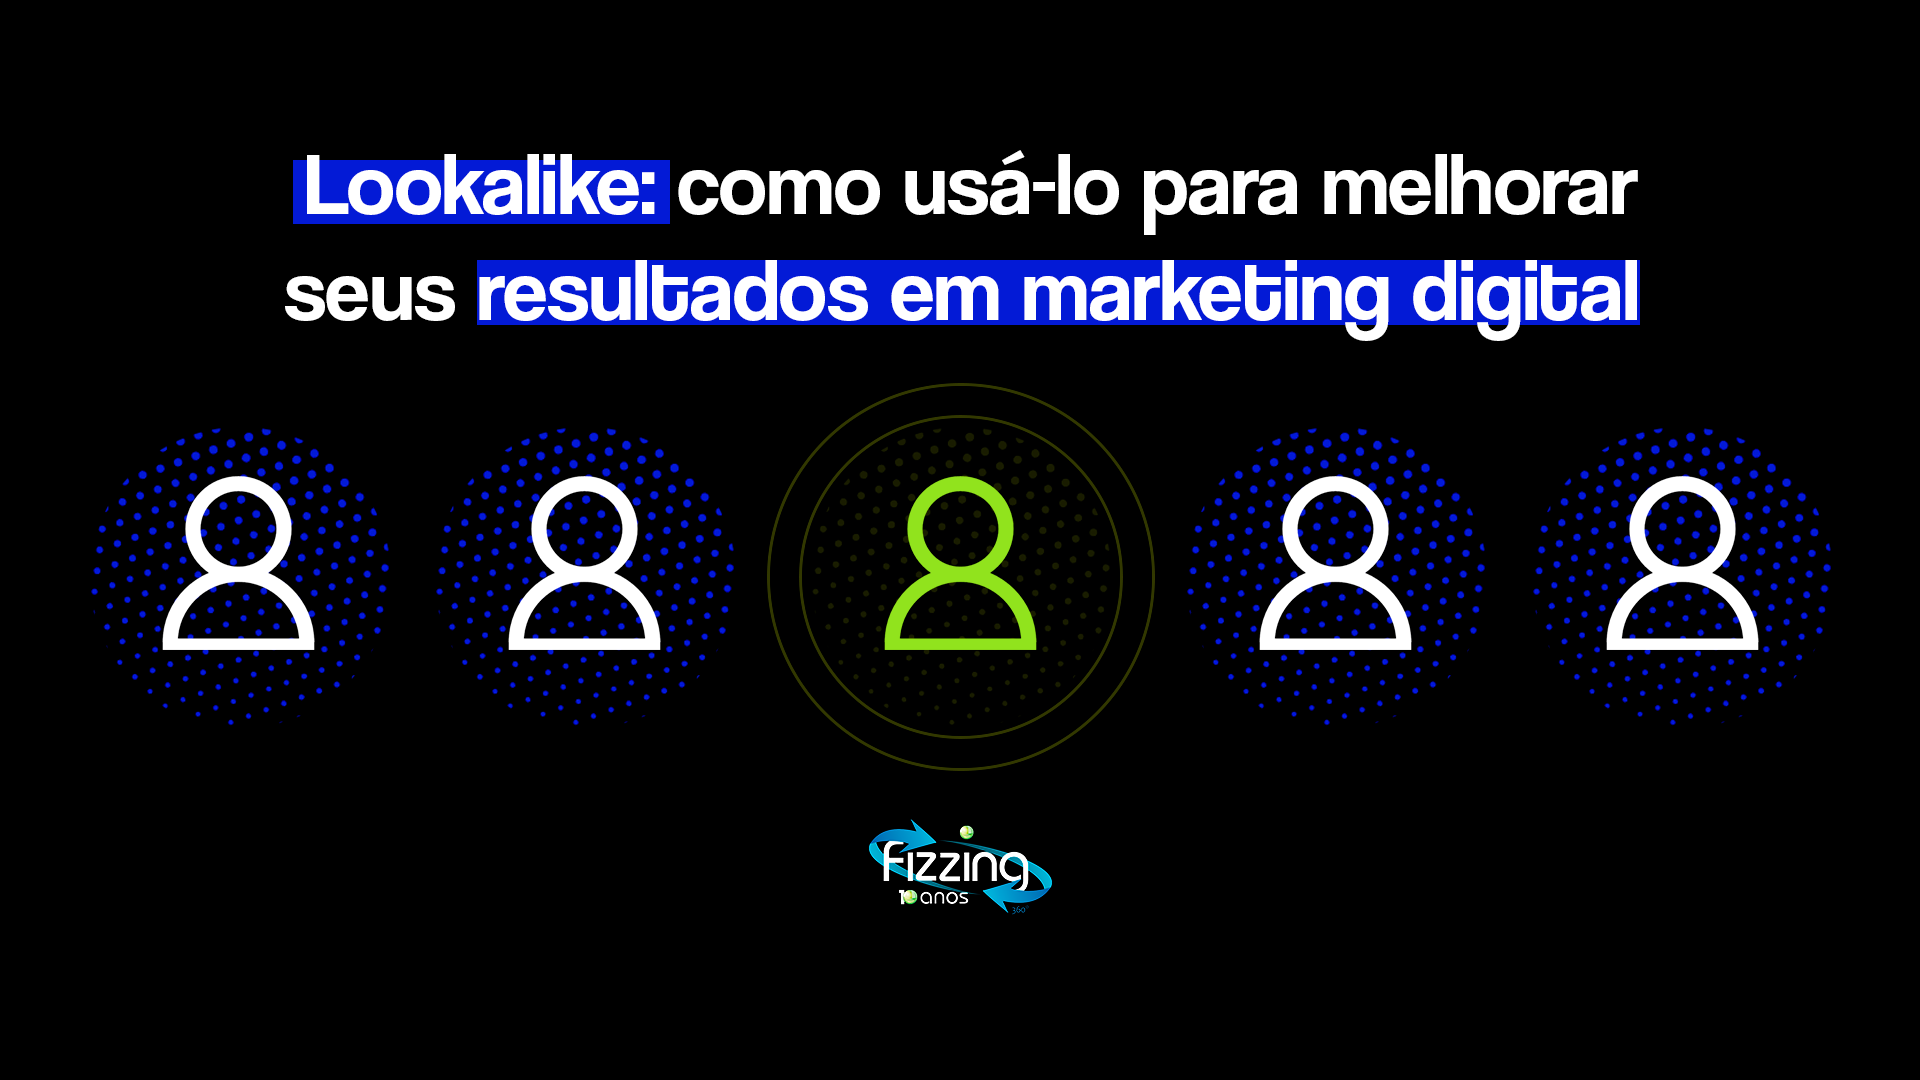 5 ícones representando pessoas, sendo o do meio verde, enquanto os demais são brancos. No topo, o seguinte texto: "Lookalike: como usá-lo para melhorar seus resultados em marketing digital".